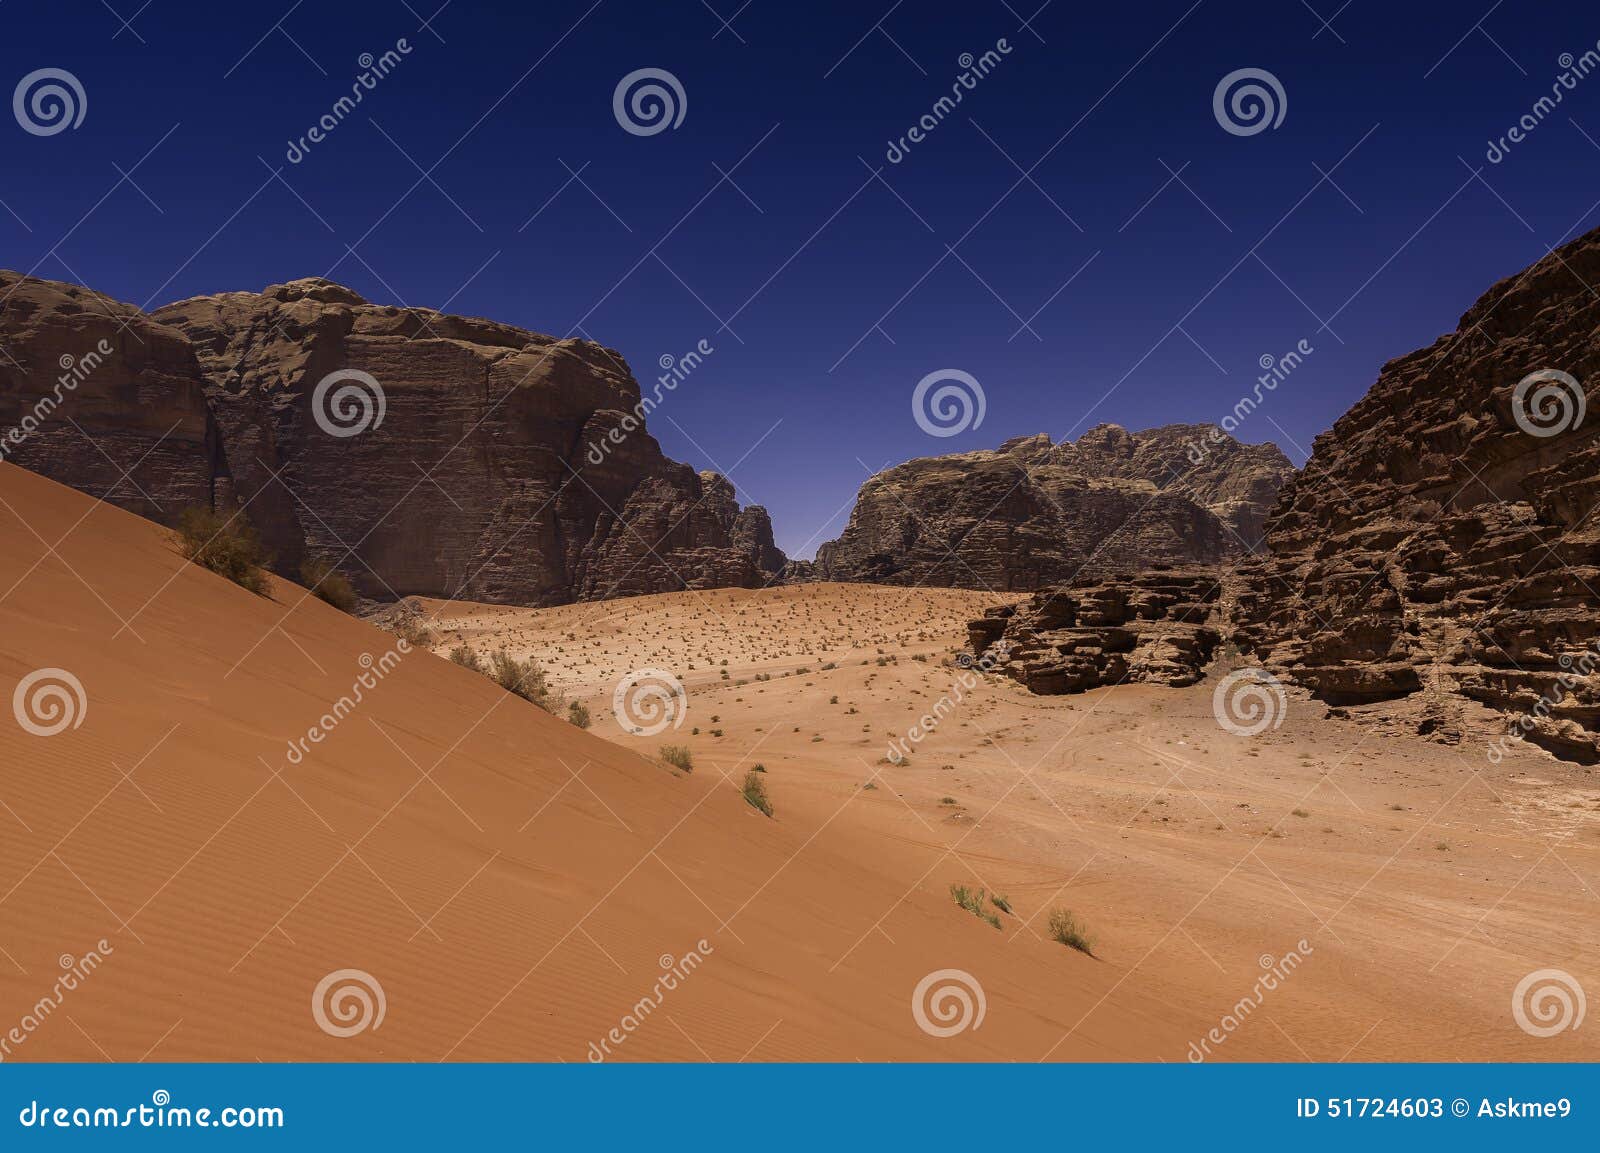 wadi rum desert, jordan